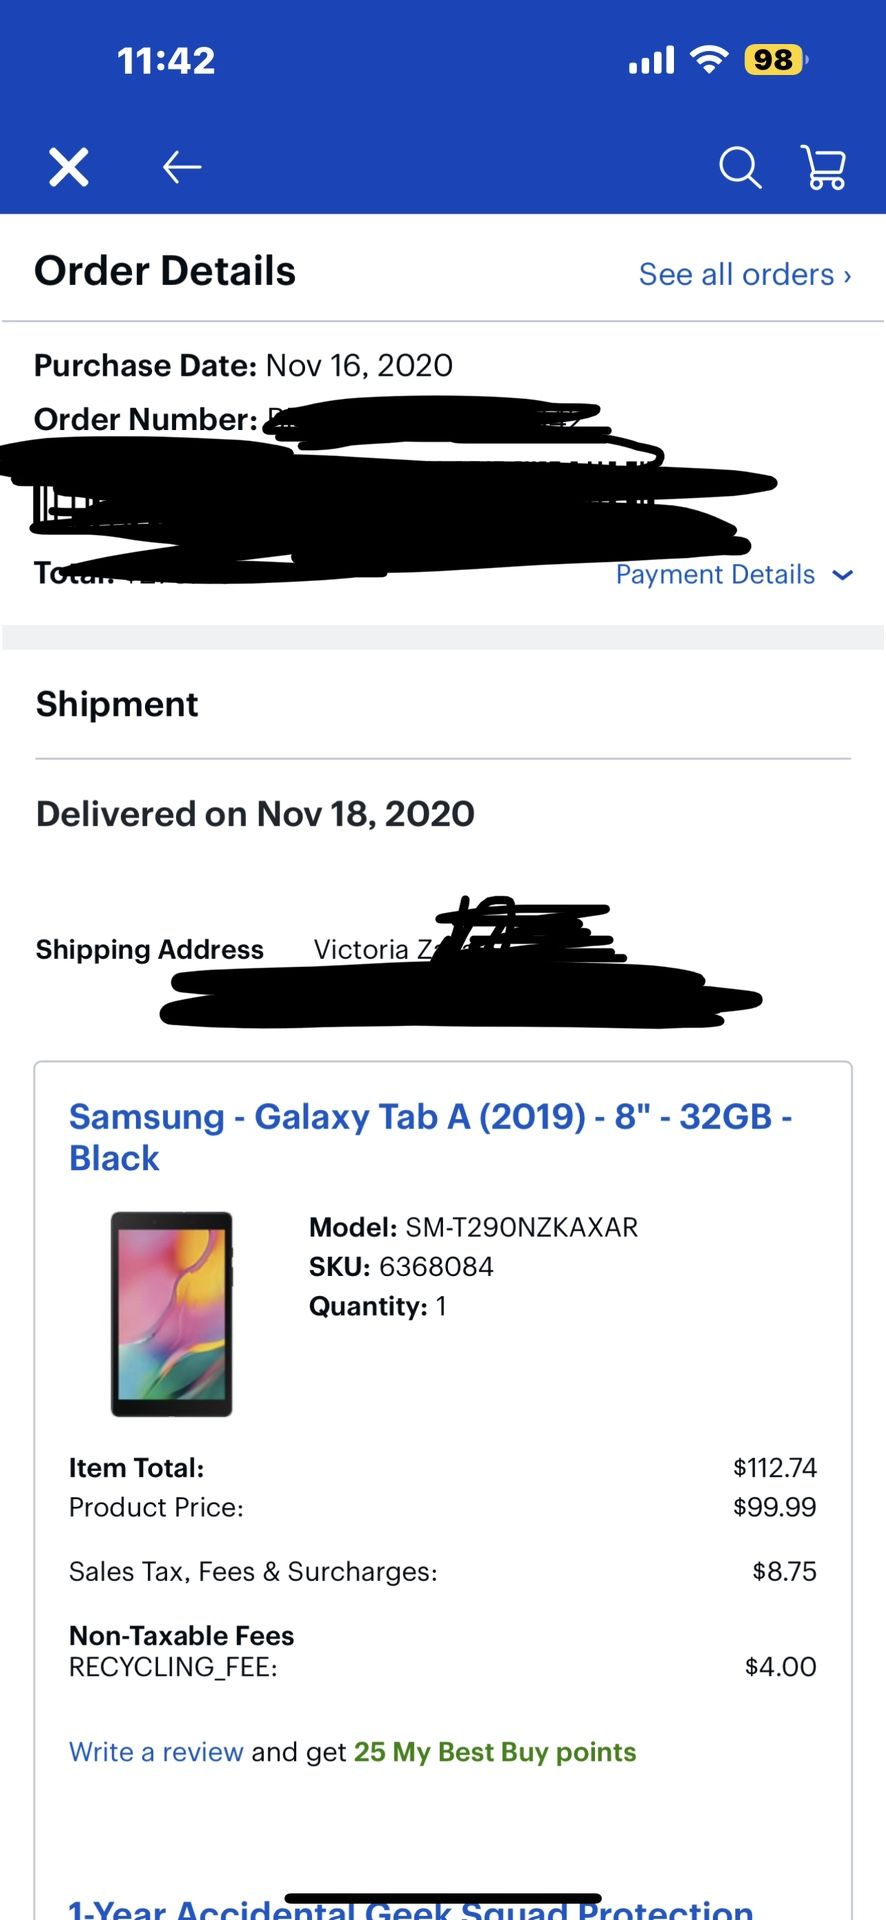 2 Samsung Tablets